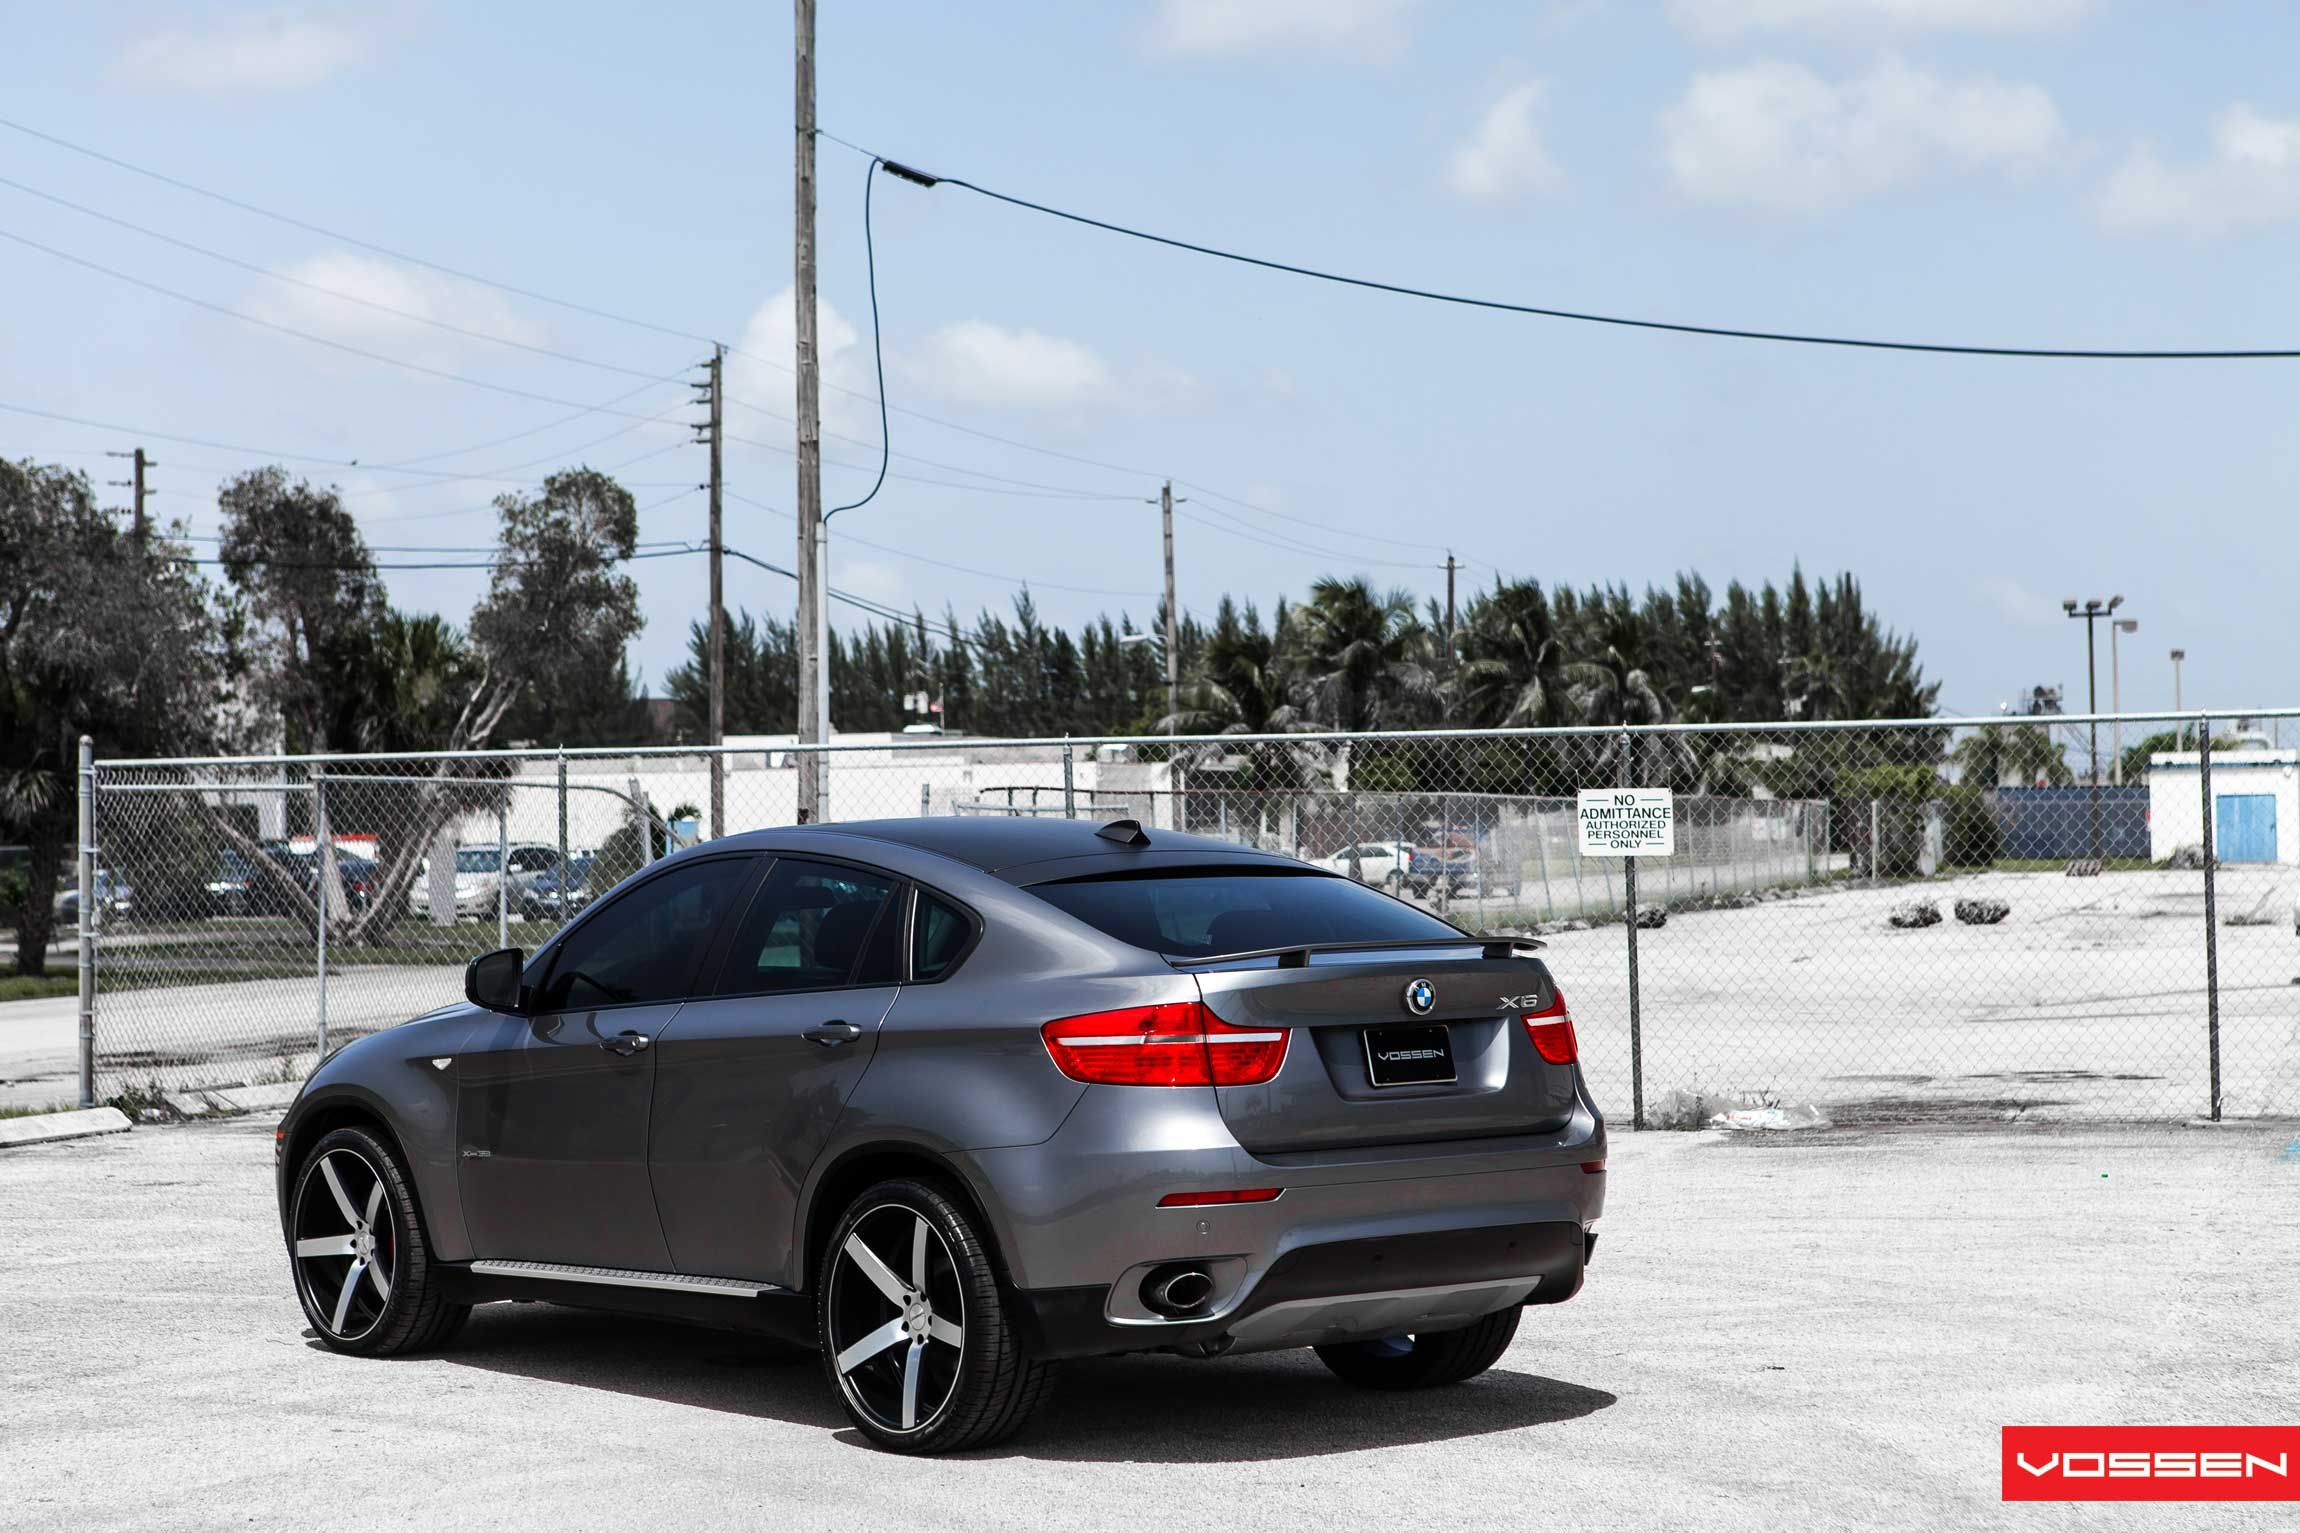 Gray Metallic BMW X6 with Custom Vossen Wheels - Photo by Vossen